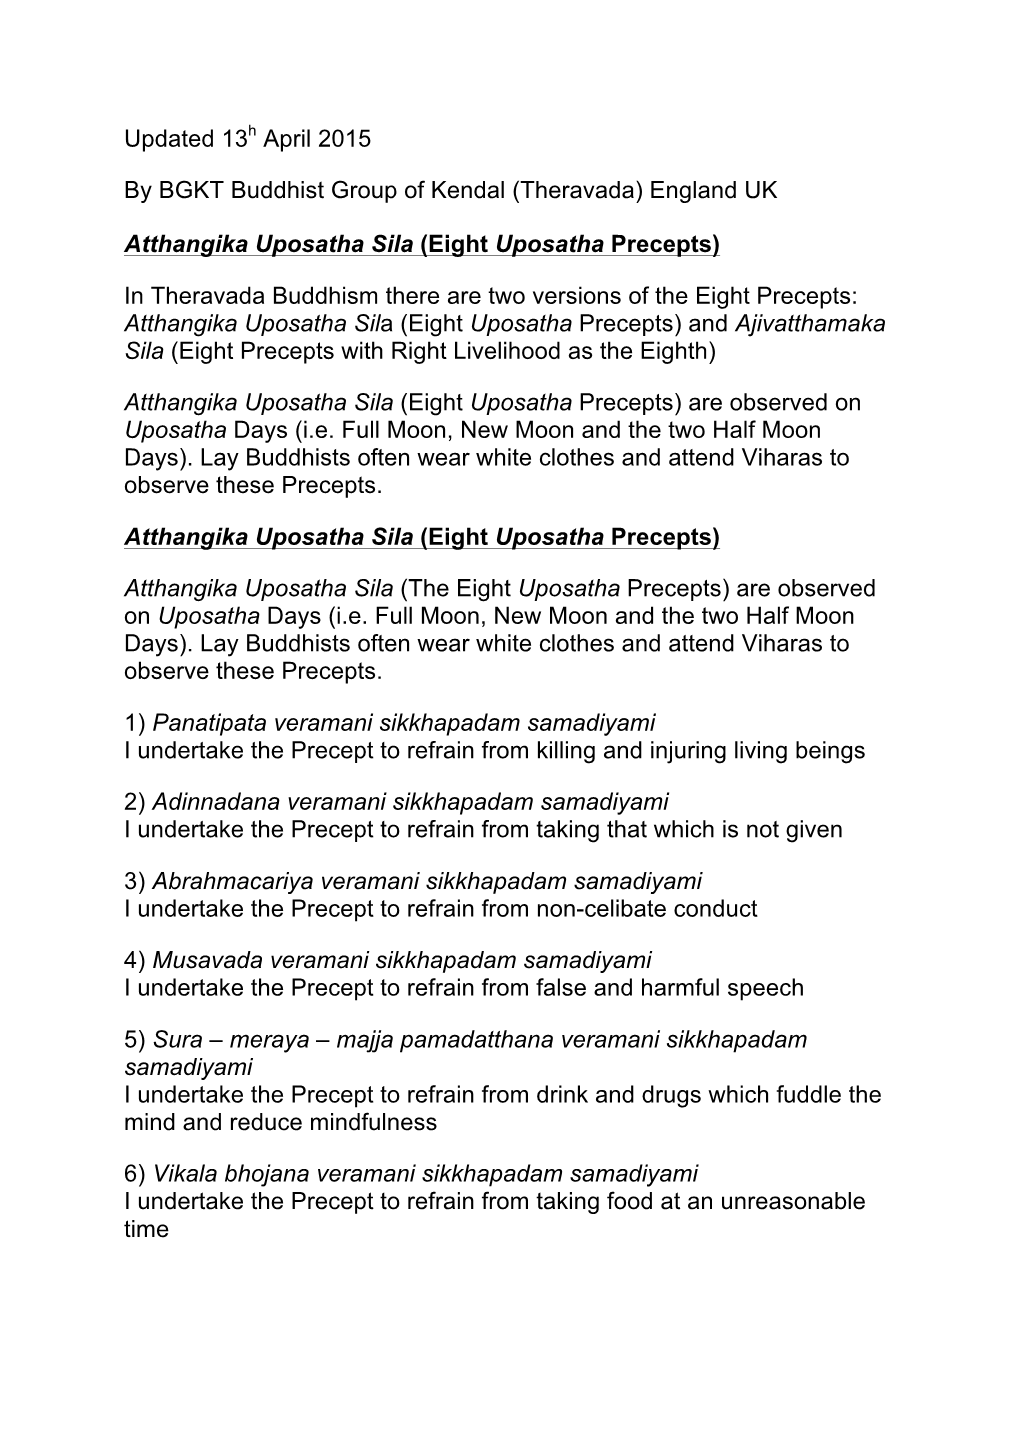 Eight Uposatha Precepts)